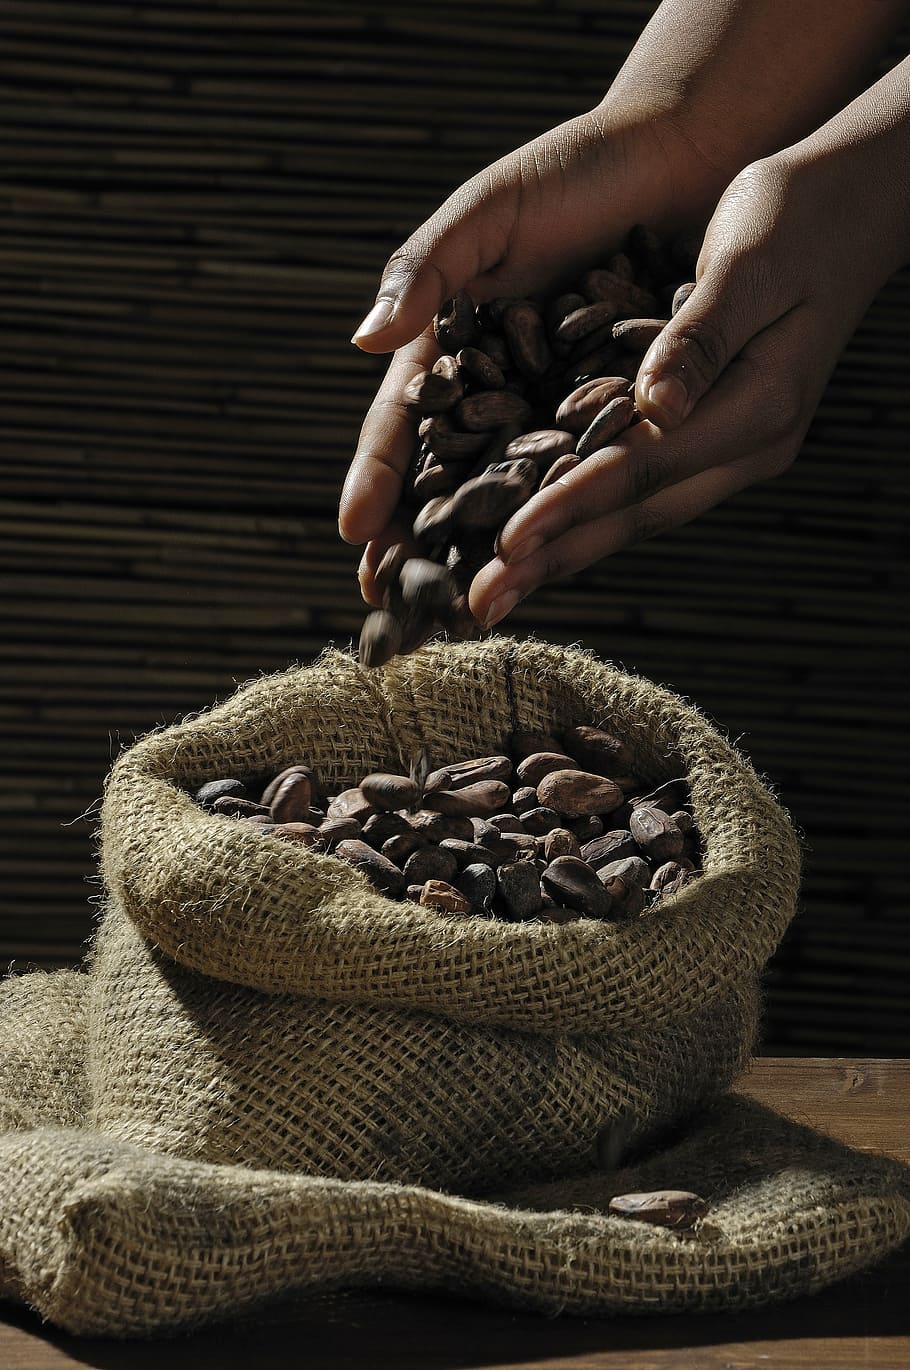 persona, tenencia, marrón, semillas, granos de cacao, cacao, dulces, chocolate, mano humana, mano